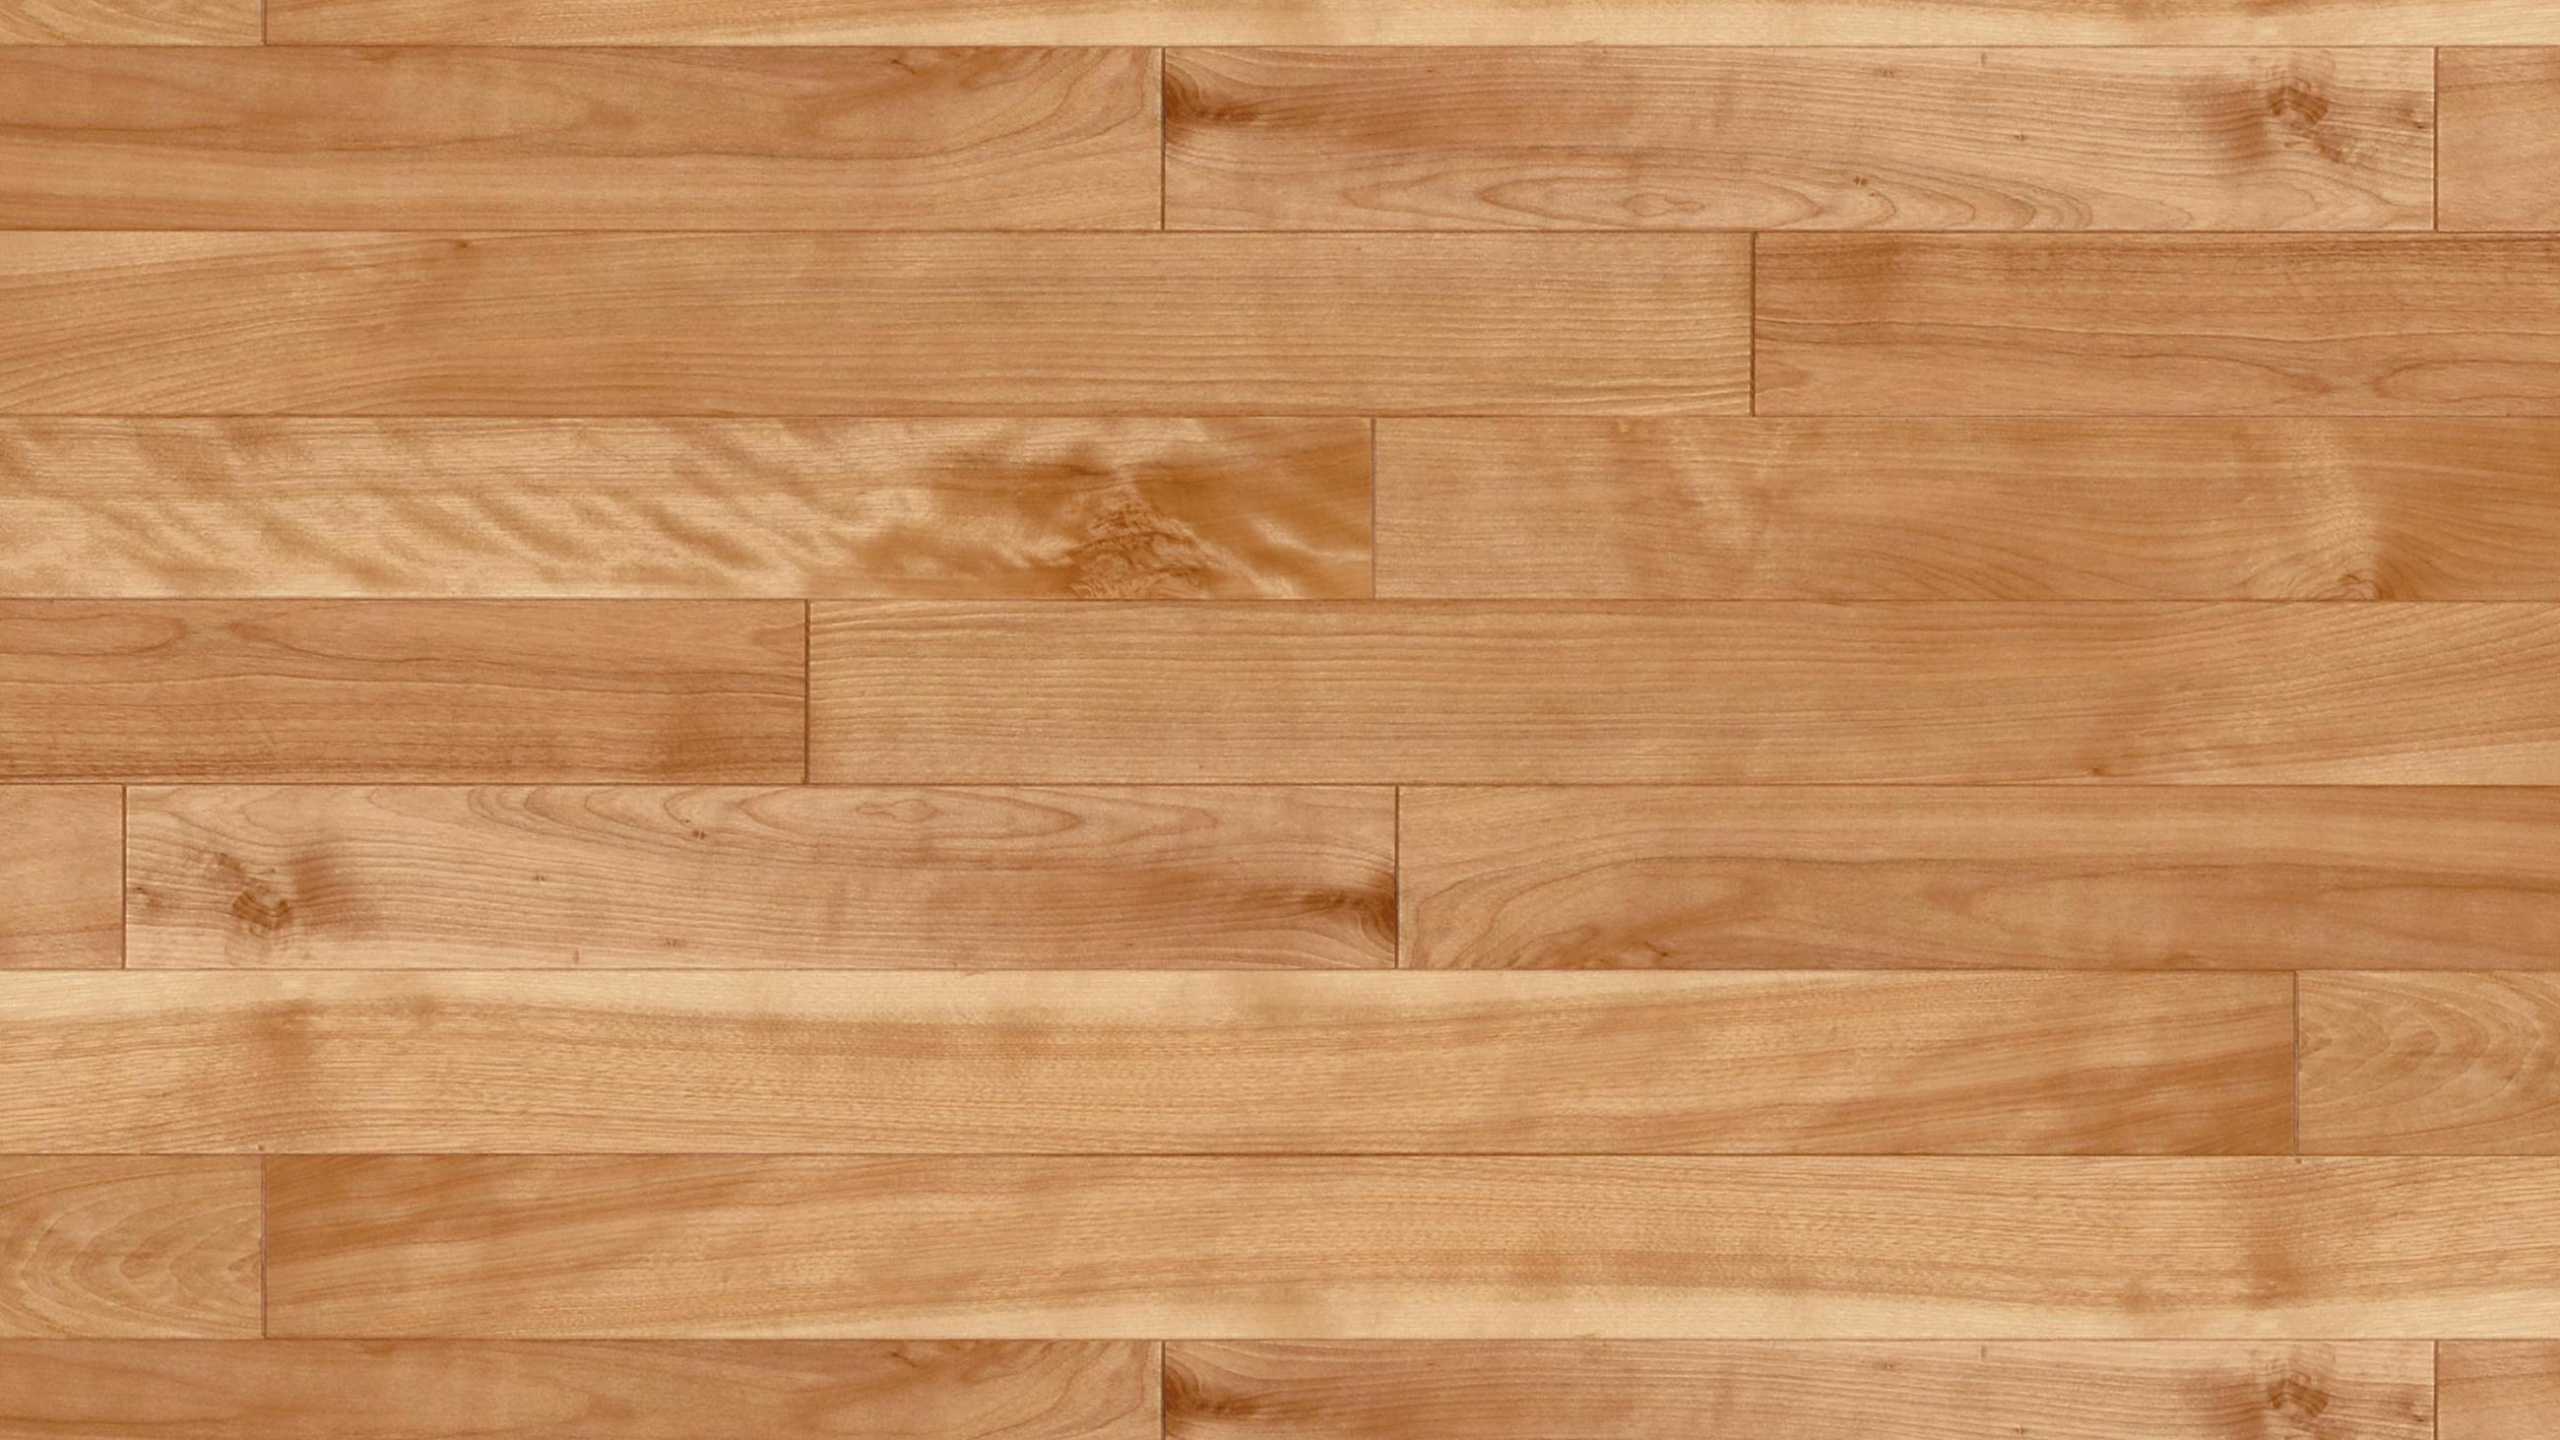 Brown Wooden Parquet Floor Tiles. Wallpaper in 2560x1440 Resolution